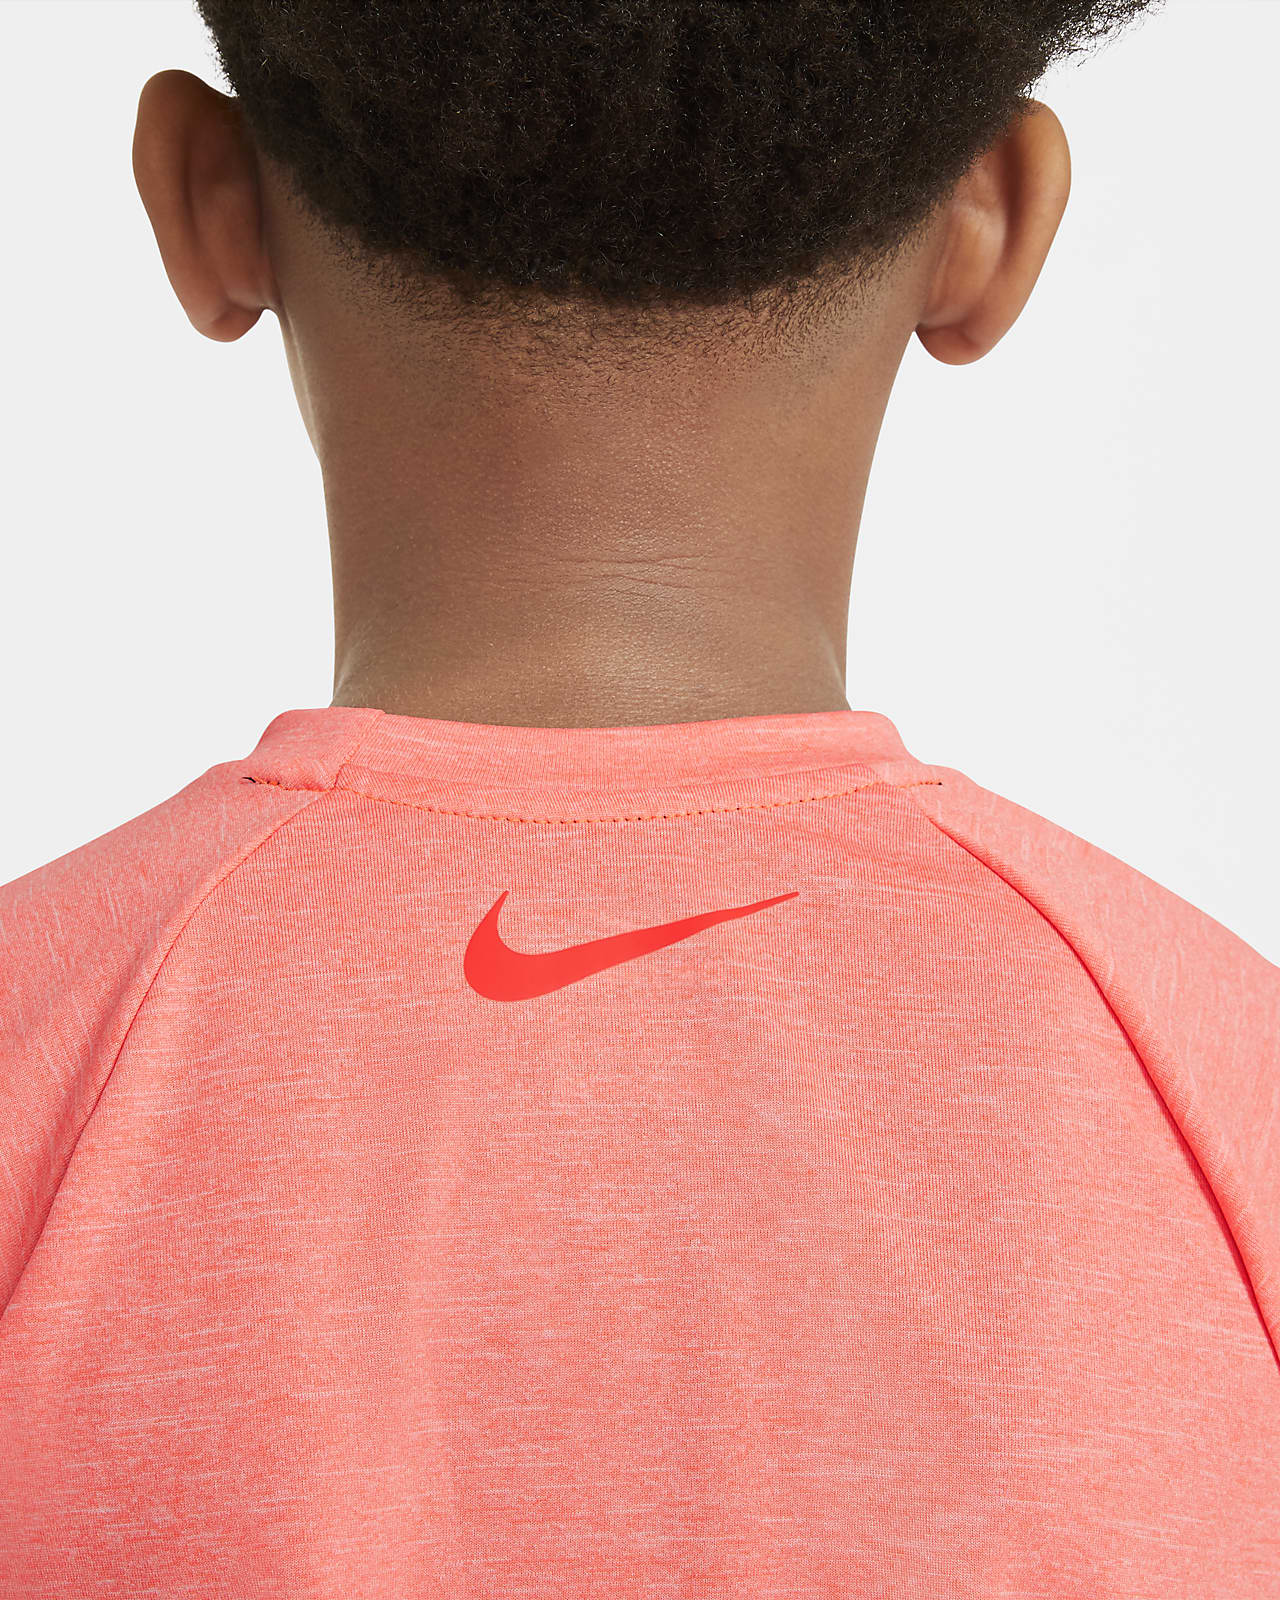 Nike Kids' Dri-Fit Short Sleeve Hydroguard Swim Top in Midnight Navy